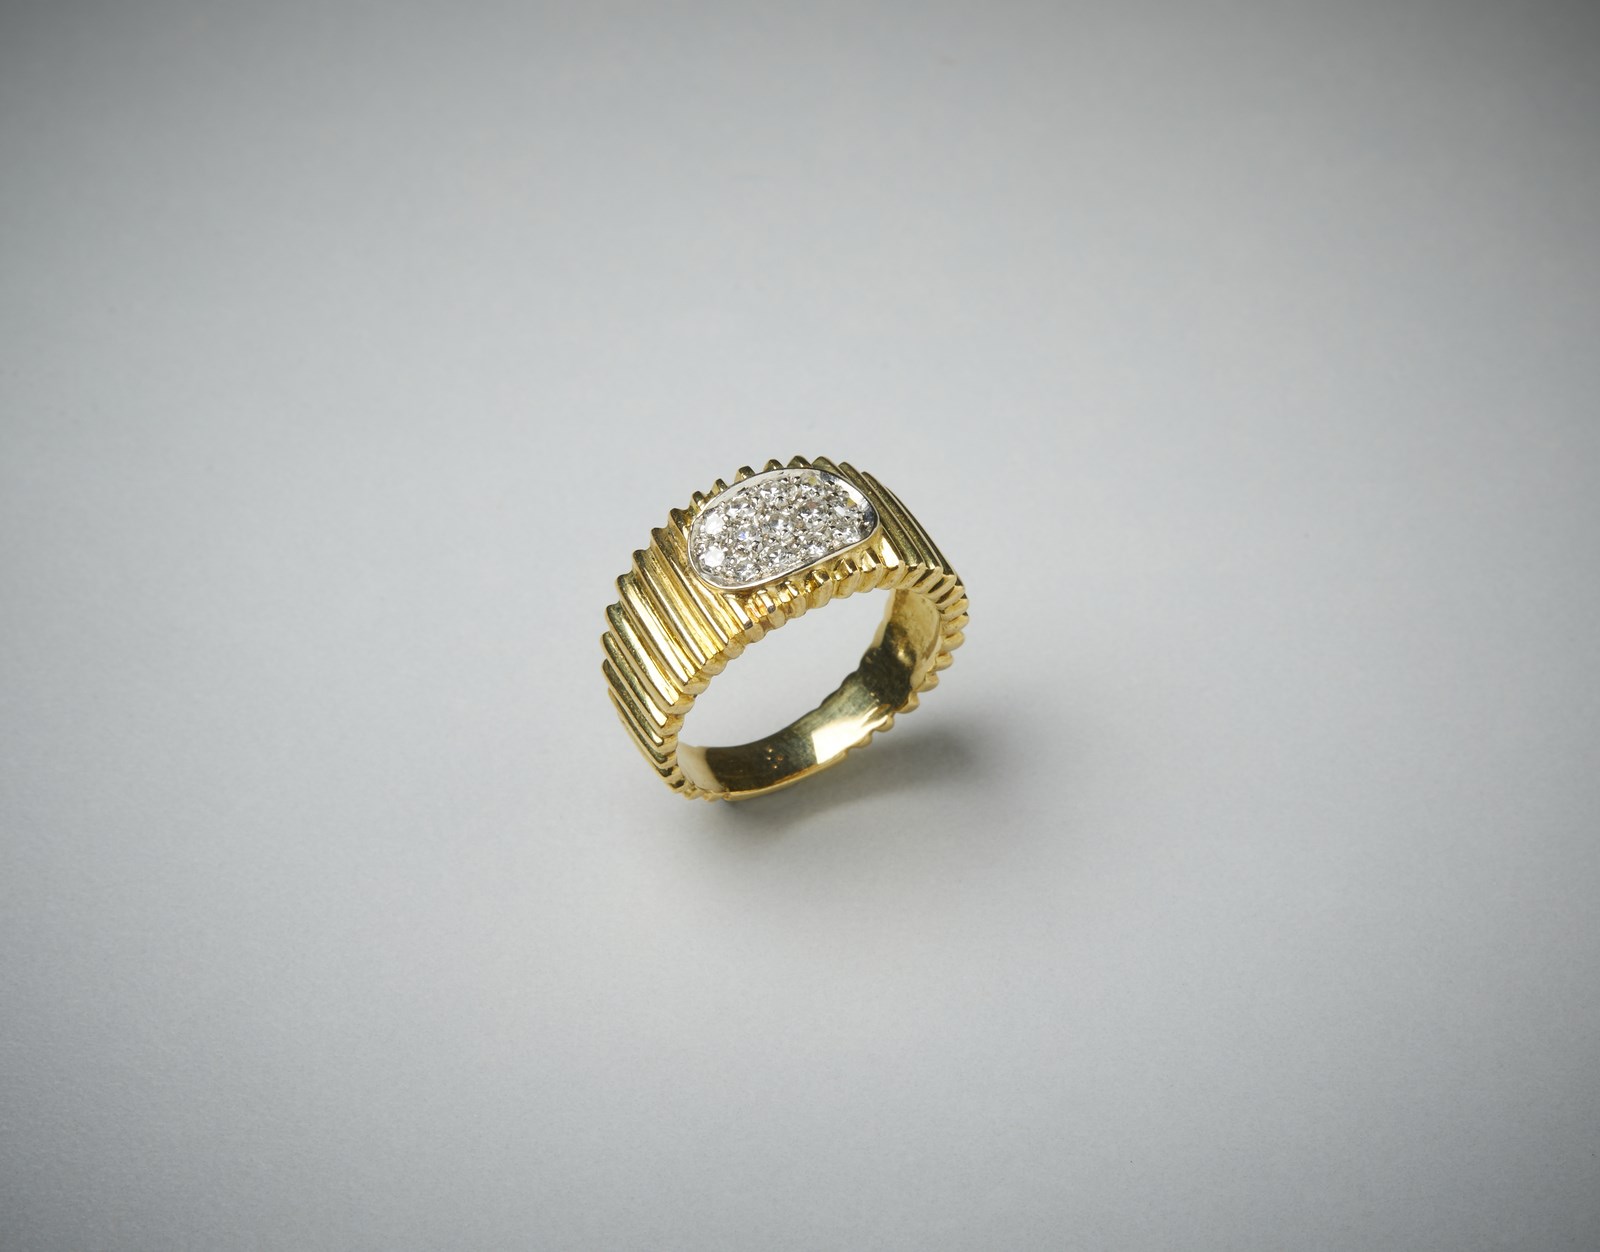 Anello a fascetta rigata in oro giallo 750 con pavè di diamanti bianchi taglio huit huit, totale carati: 0.40 circa (. )